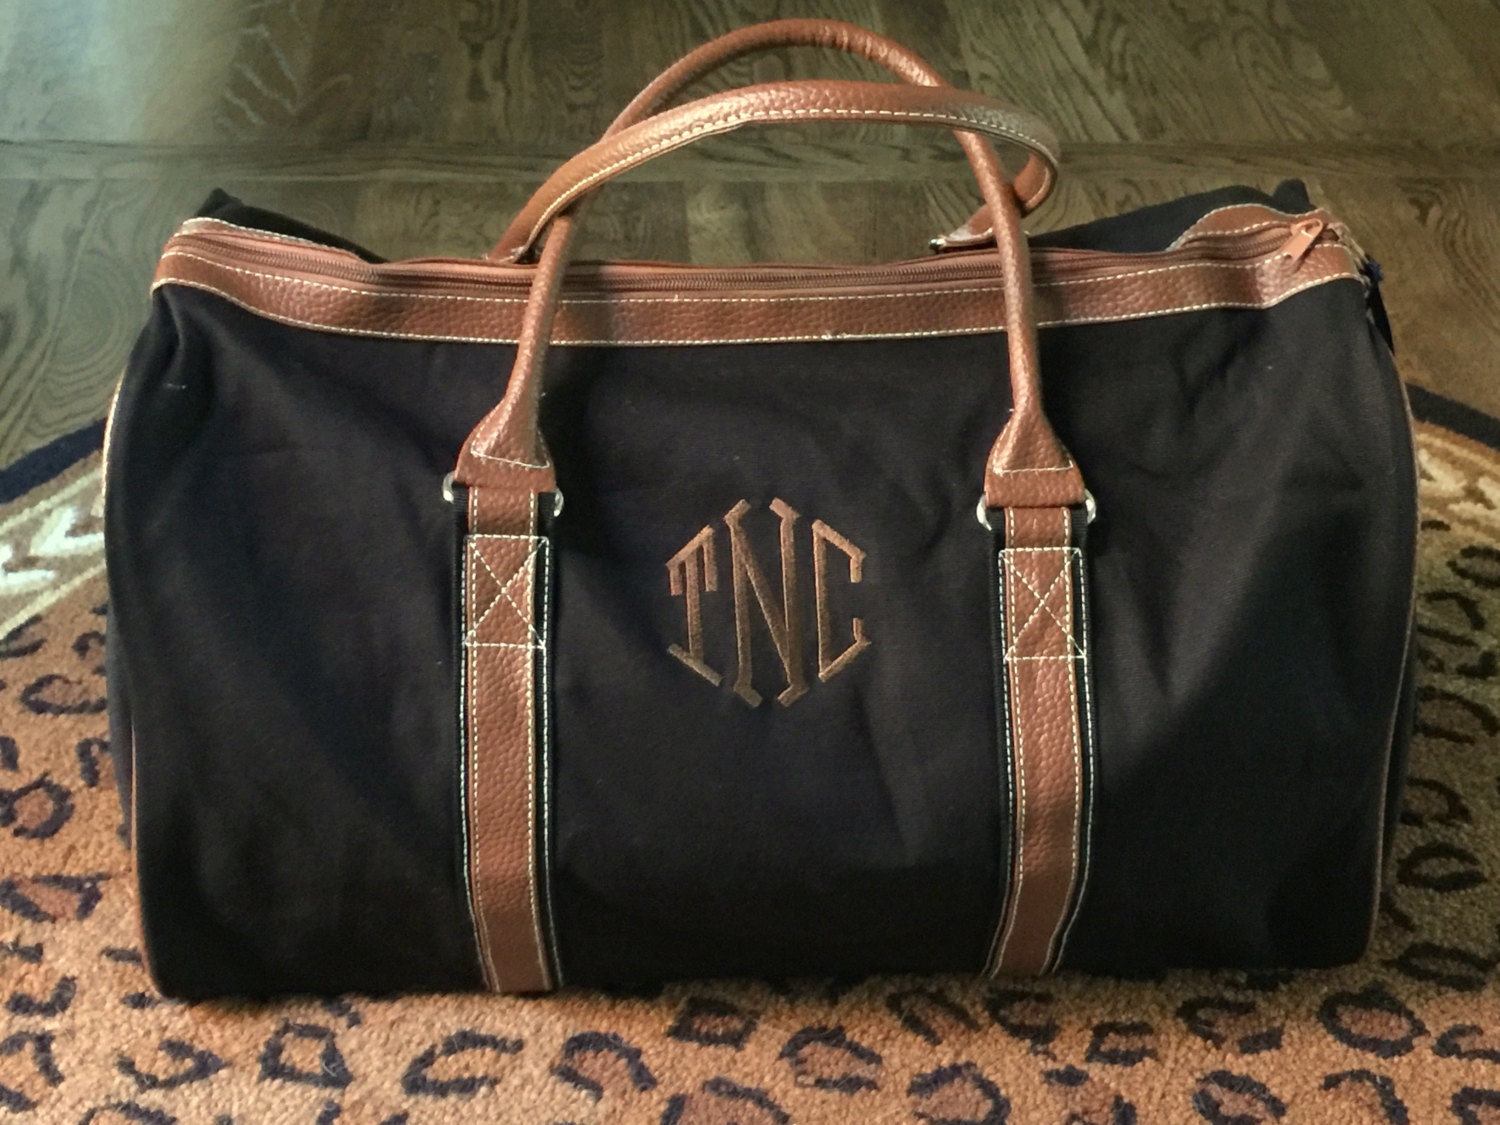 Personalized Duffle Bag Monogrammed Bag Duffle Bag for Men